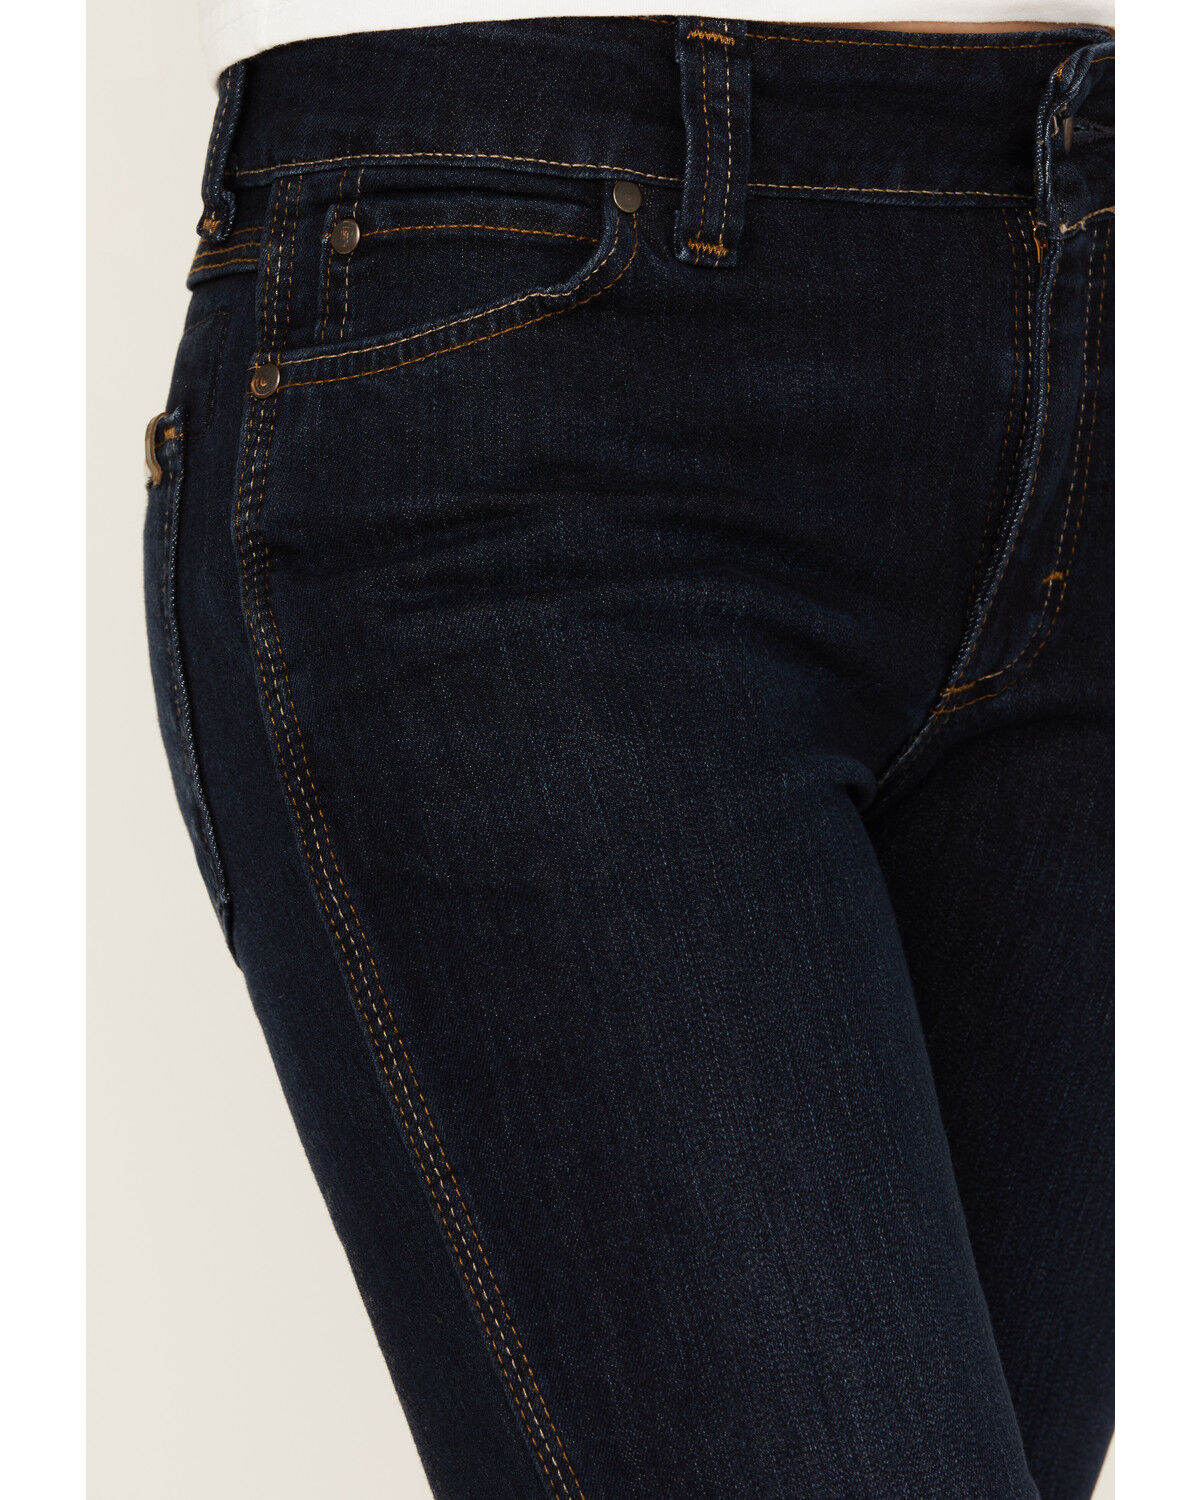 Wrangler Riggs Workwear Women's Five Pocket Boot Cut Jean